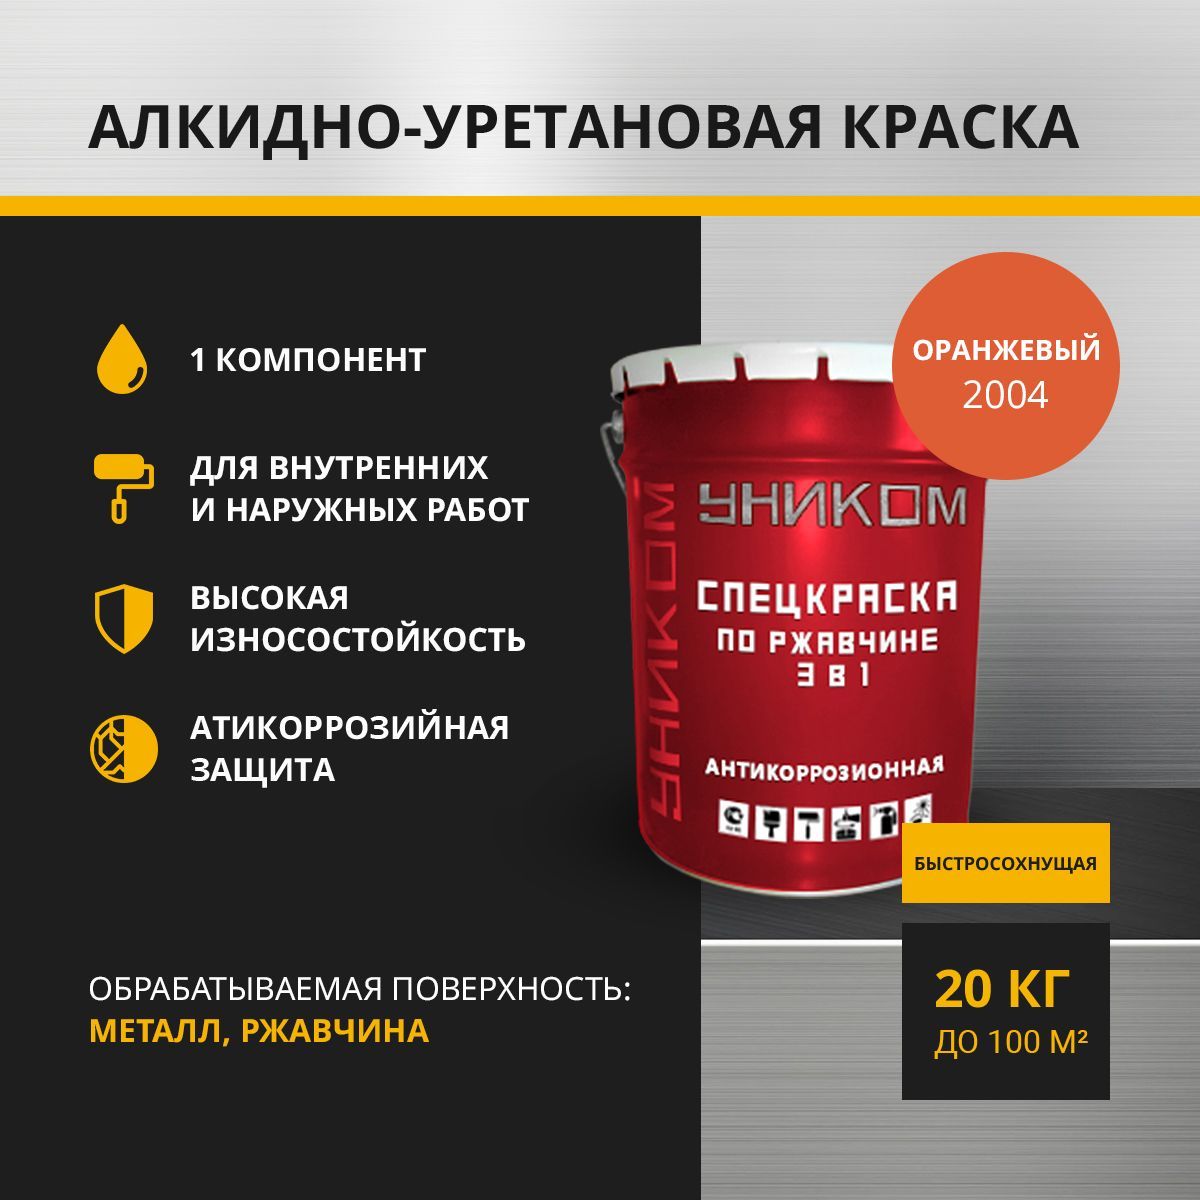 Спецэмаль УНИКОМ УН-01-20-2012 по ржавчине 3 в 1 для ремонтной окраски, оранжевый 20 кг